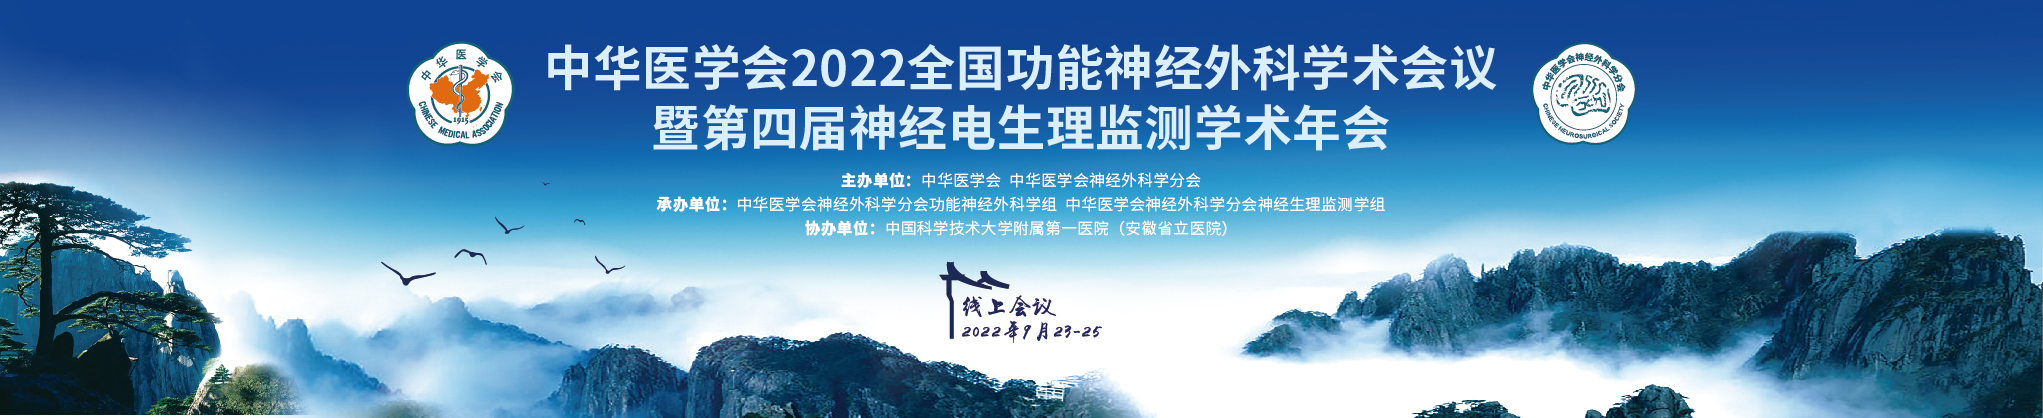 中华医学会2022全国功能神经外科学术会议暨第四届神经电生理监测学术年会